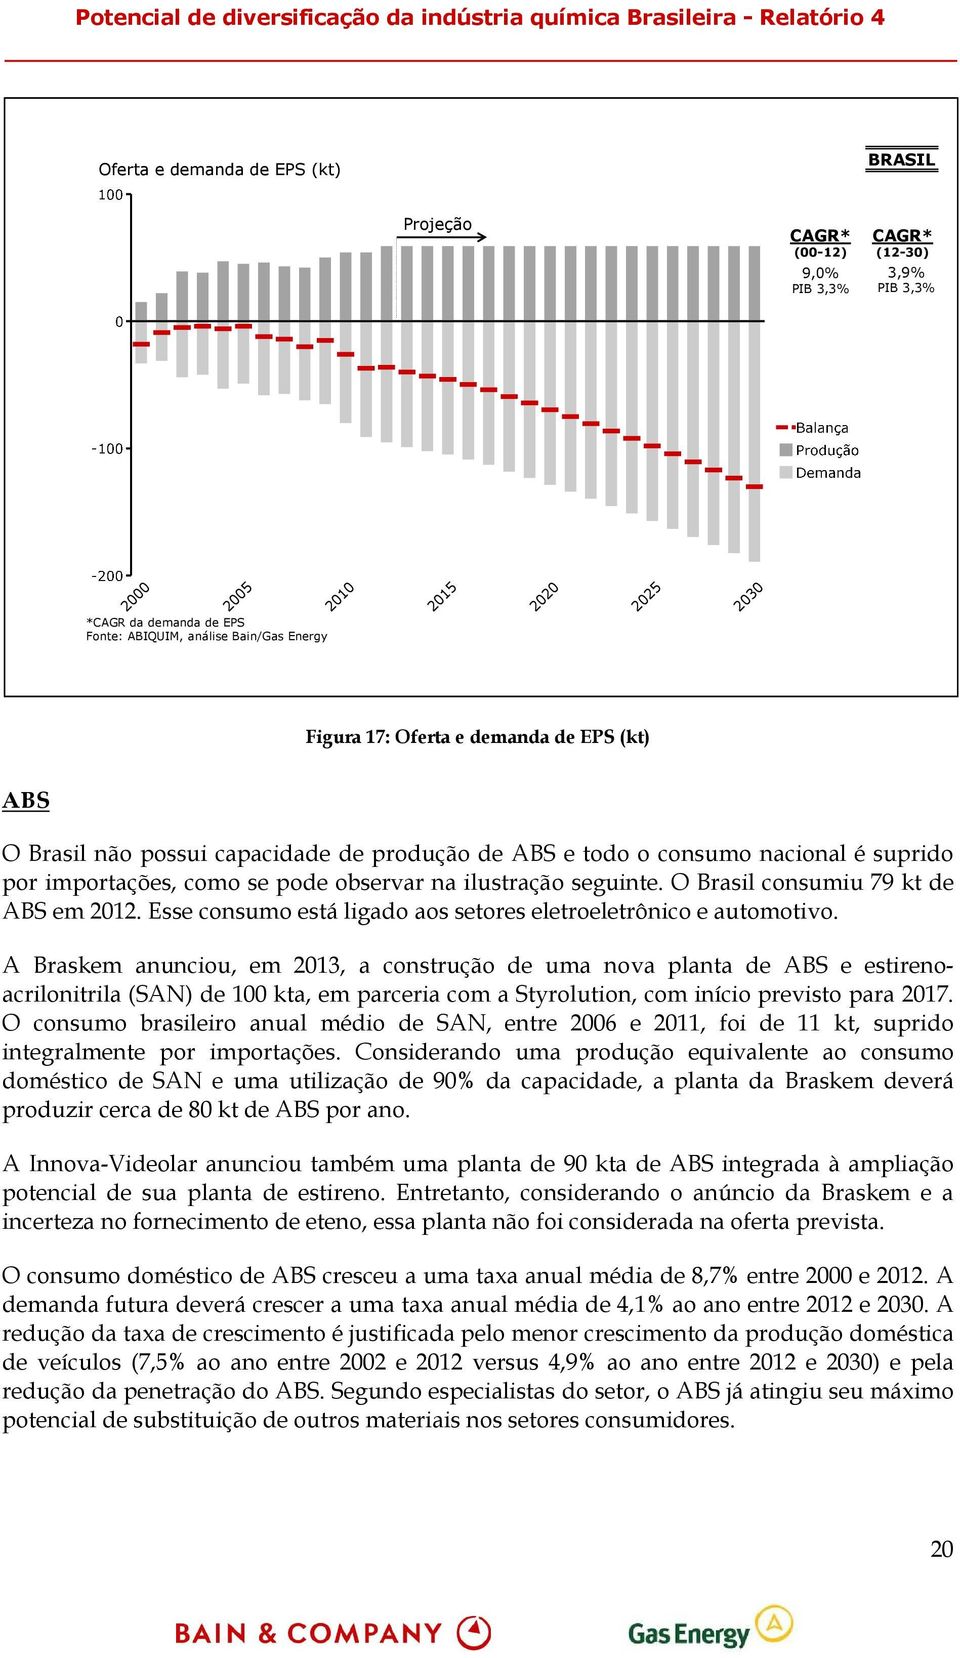 O Brasil consumiu 79 kt de ABS em 2012. Esse consumo está ligado aos setores eletroeletrônico e automotivo.